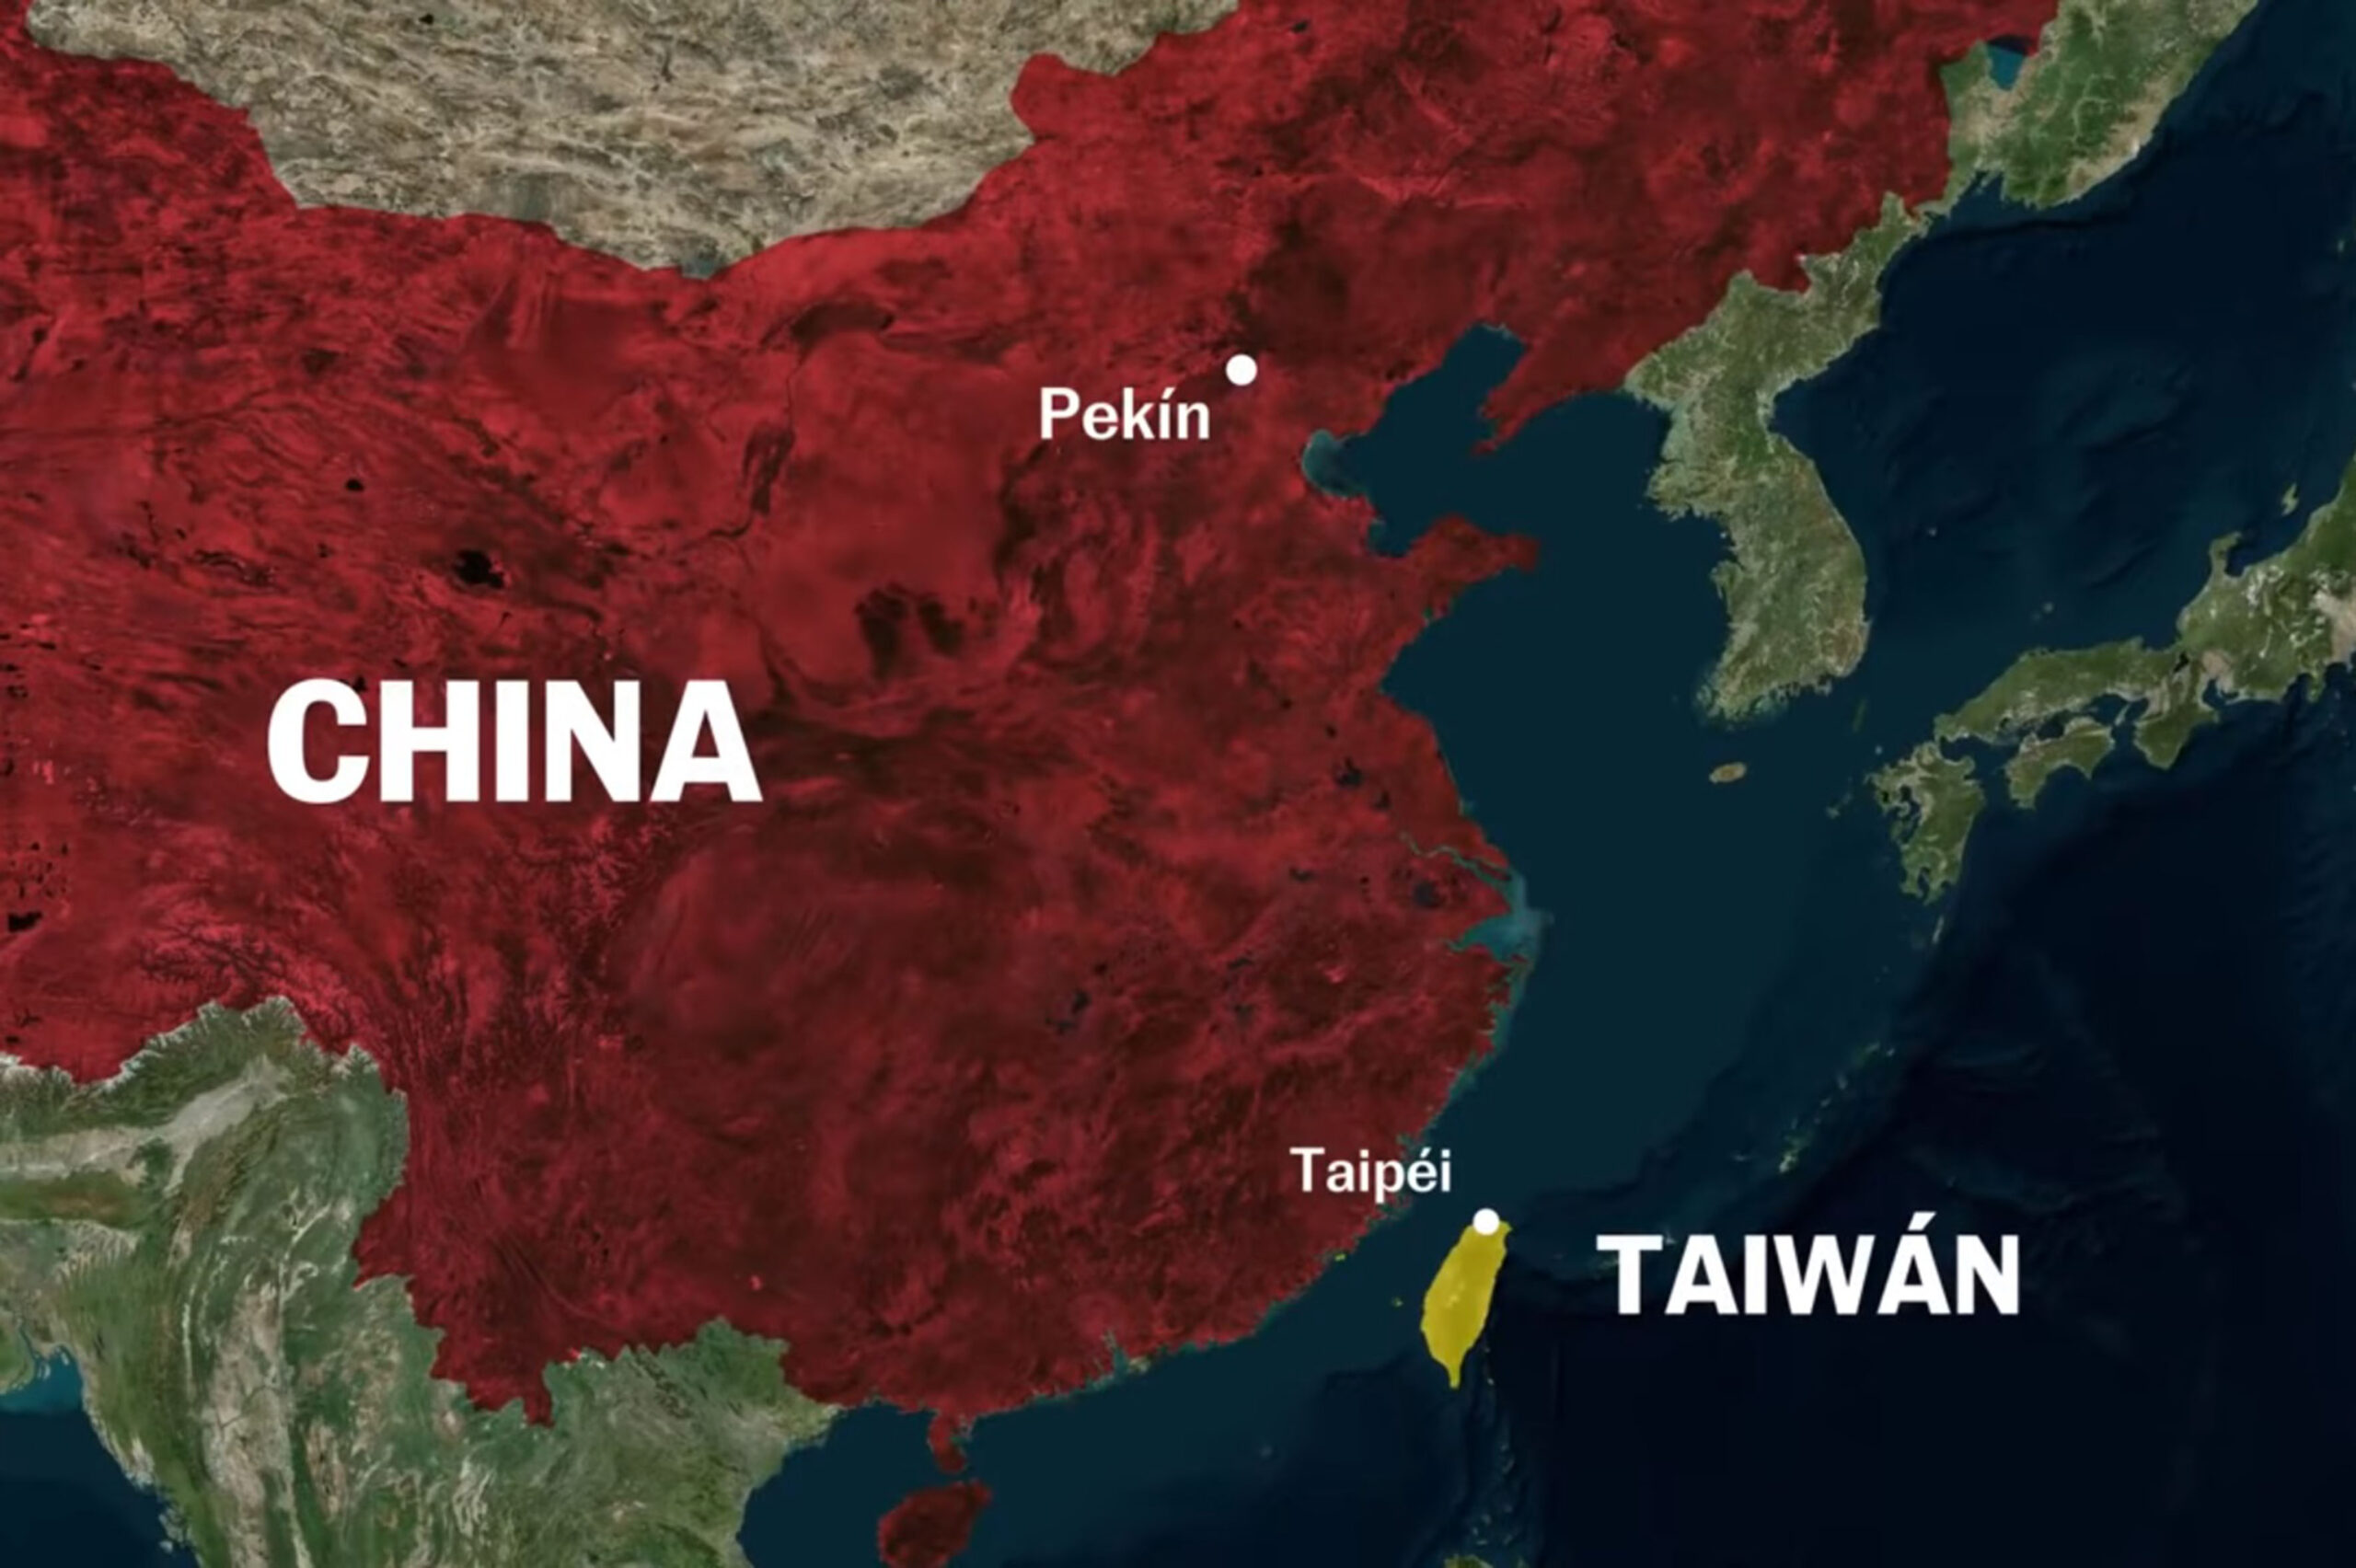 TAIWÁN, ESTRATÉGICO PARA LAS RELACIONES DIPLOMÁTICAS ENTRE CHINA Y EU